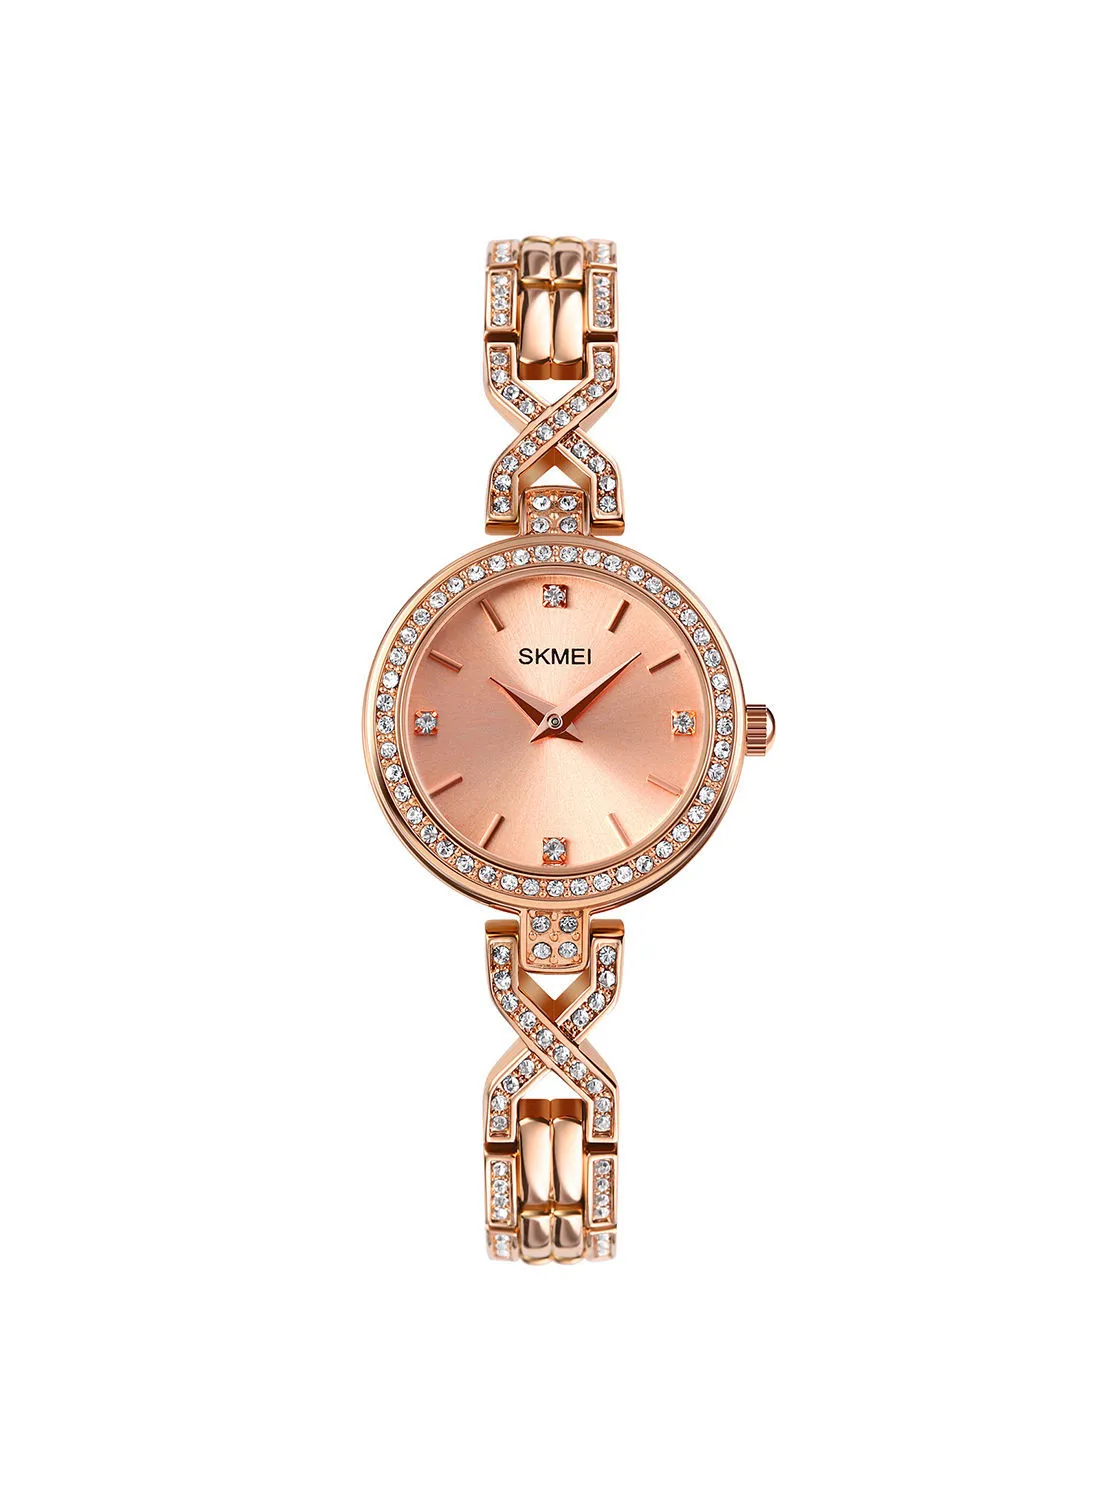 SKMEI Women's Women's Elegant Quartz Wrist Watch 8371